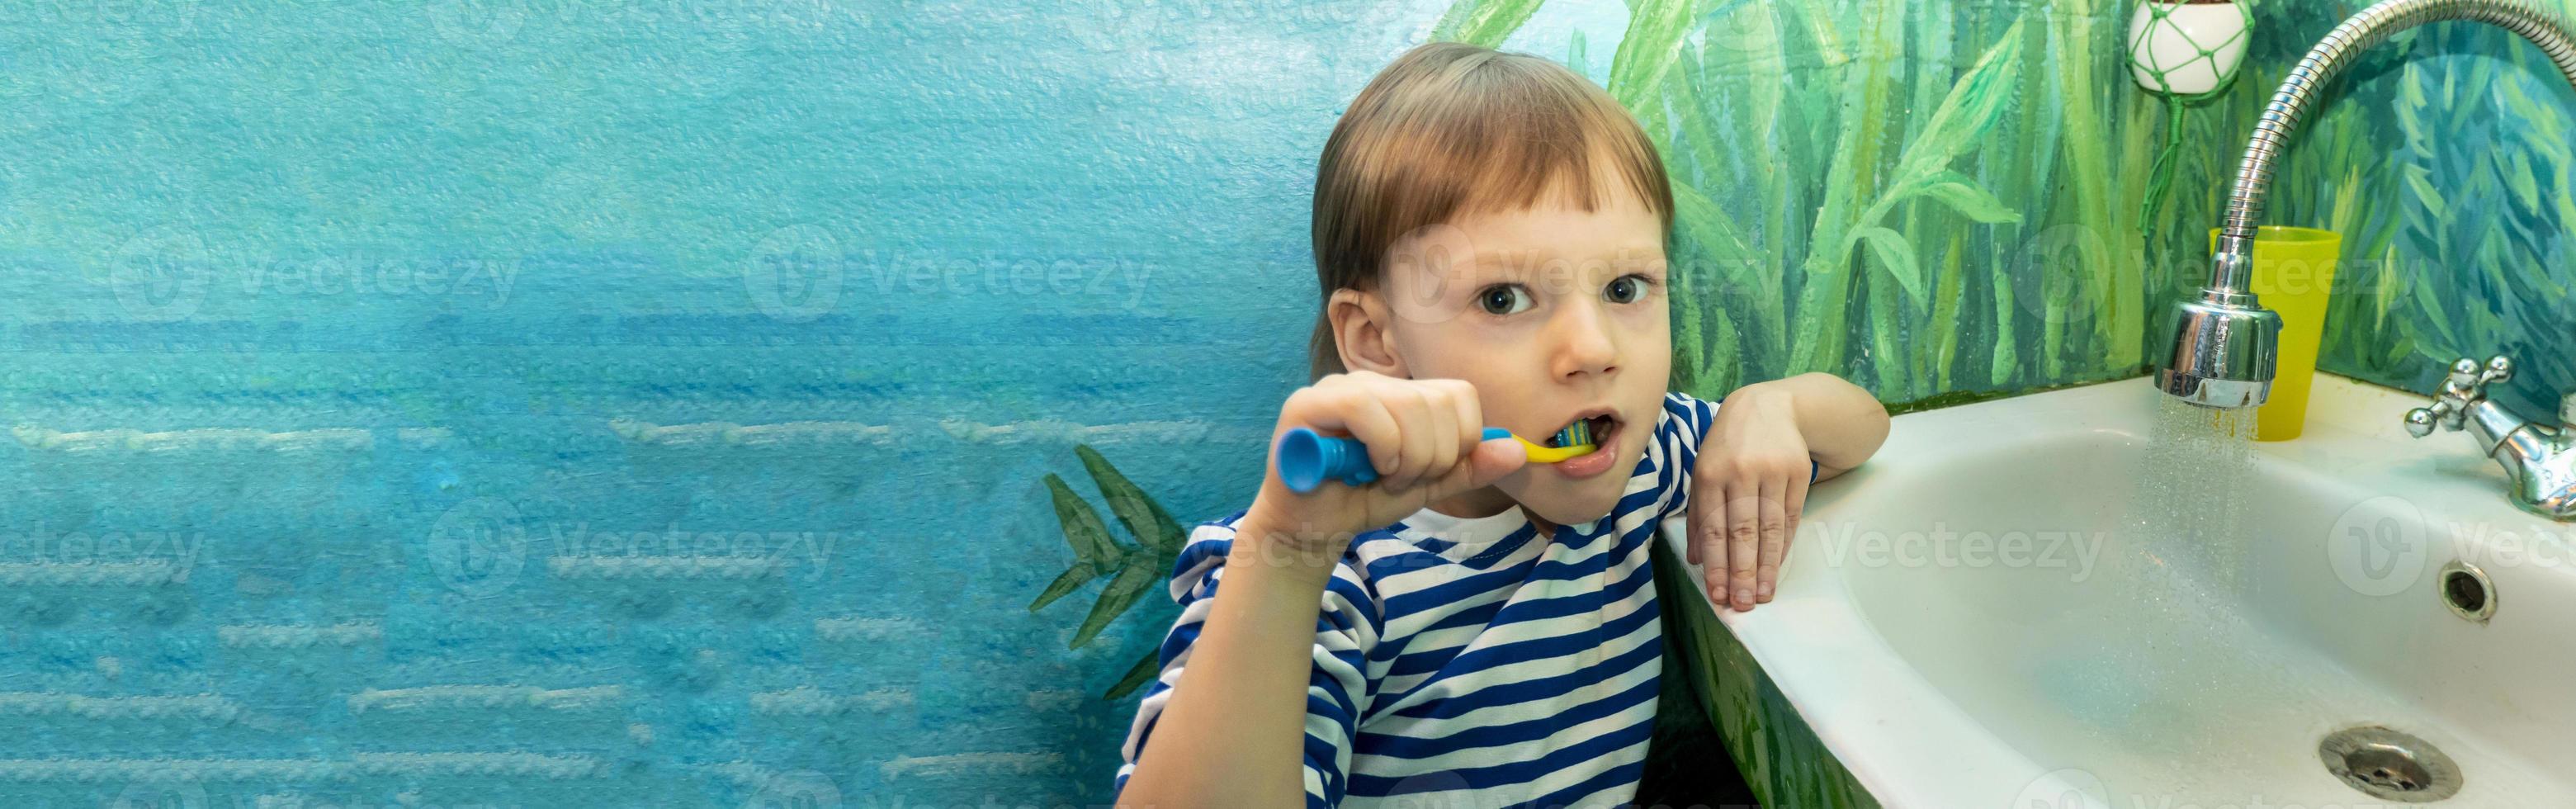 gros plan sur un jeune garçon se brosser les dents dans la chaise du dentiste photo